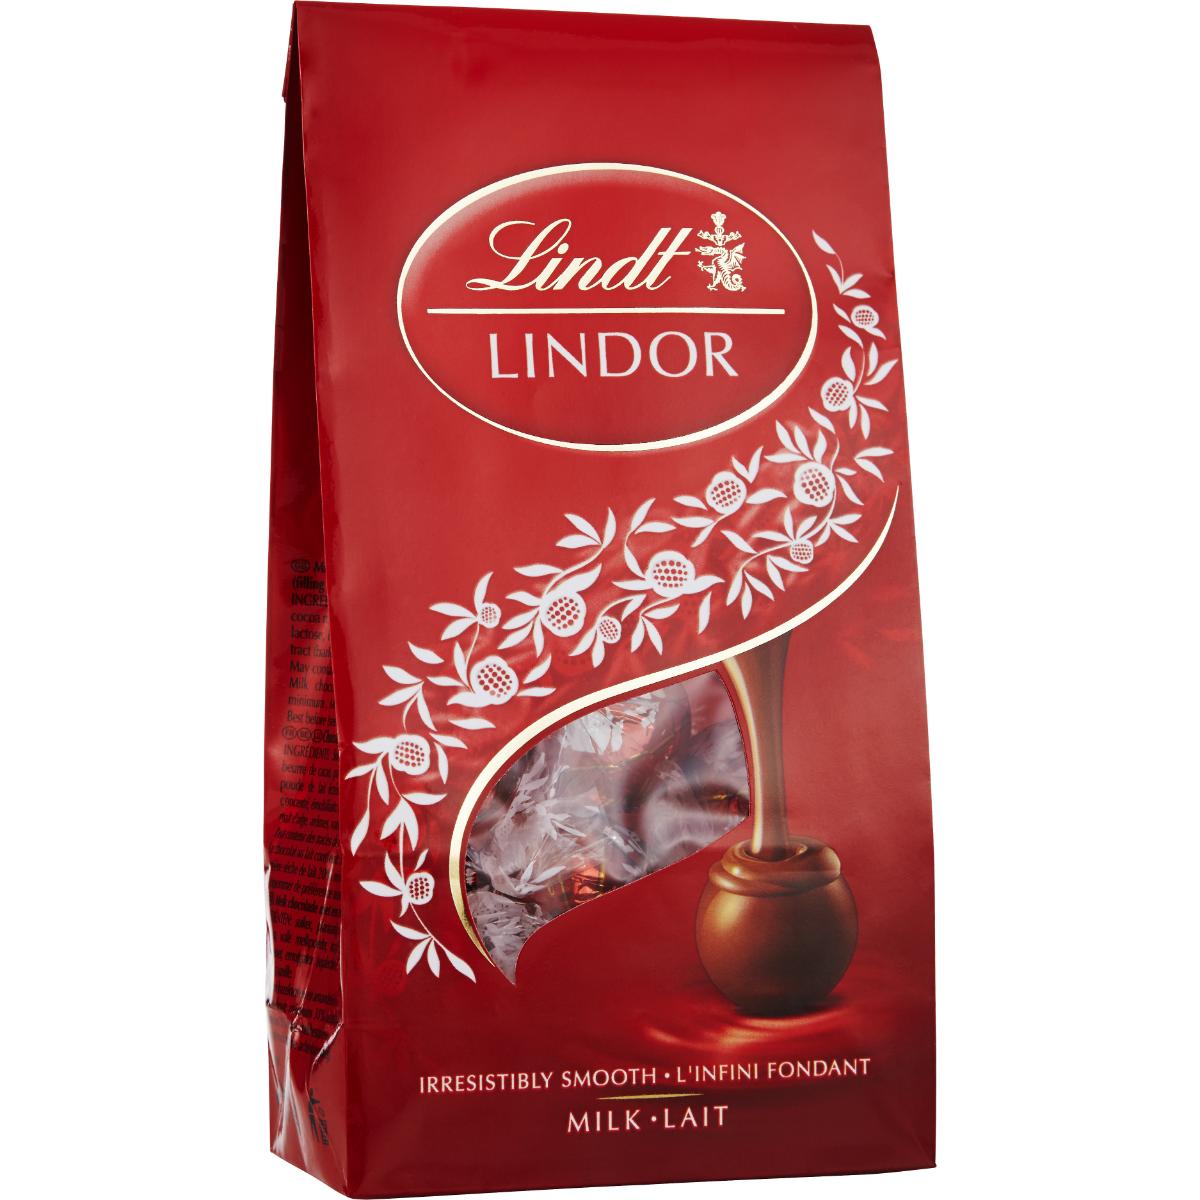 LINDOR Mjölkchokladpraliner 200g från Lindt, Choklad